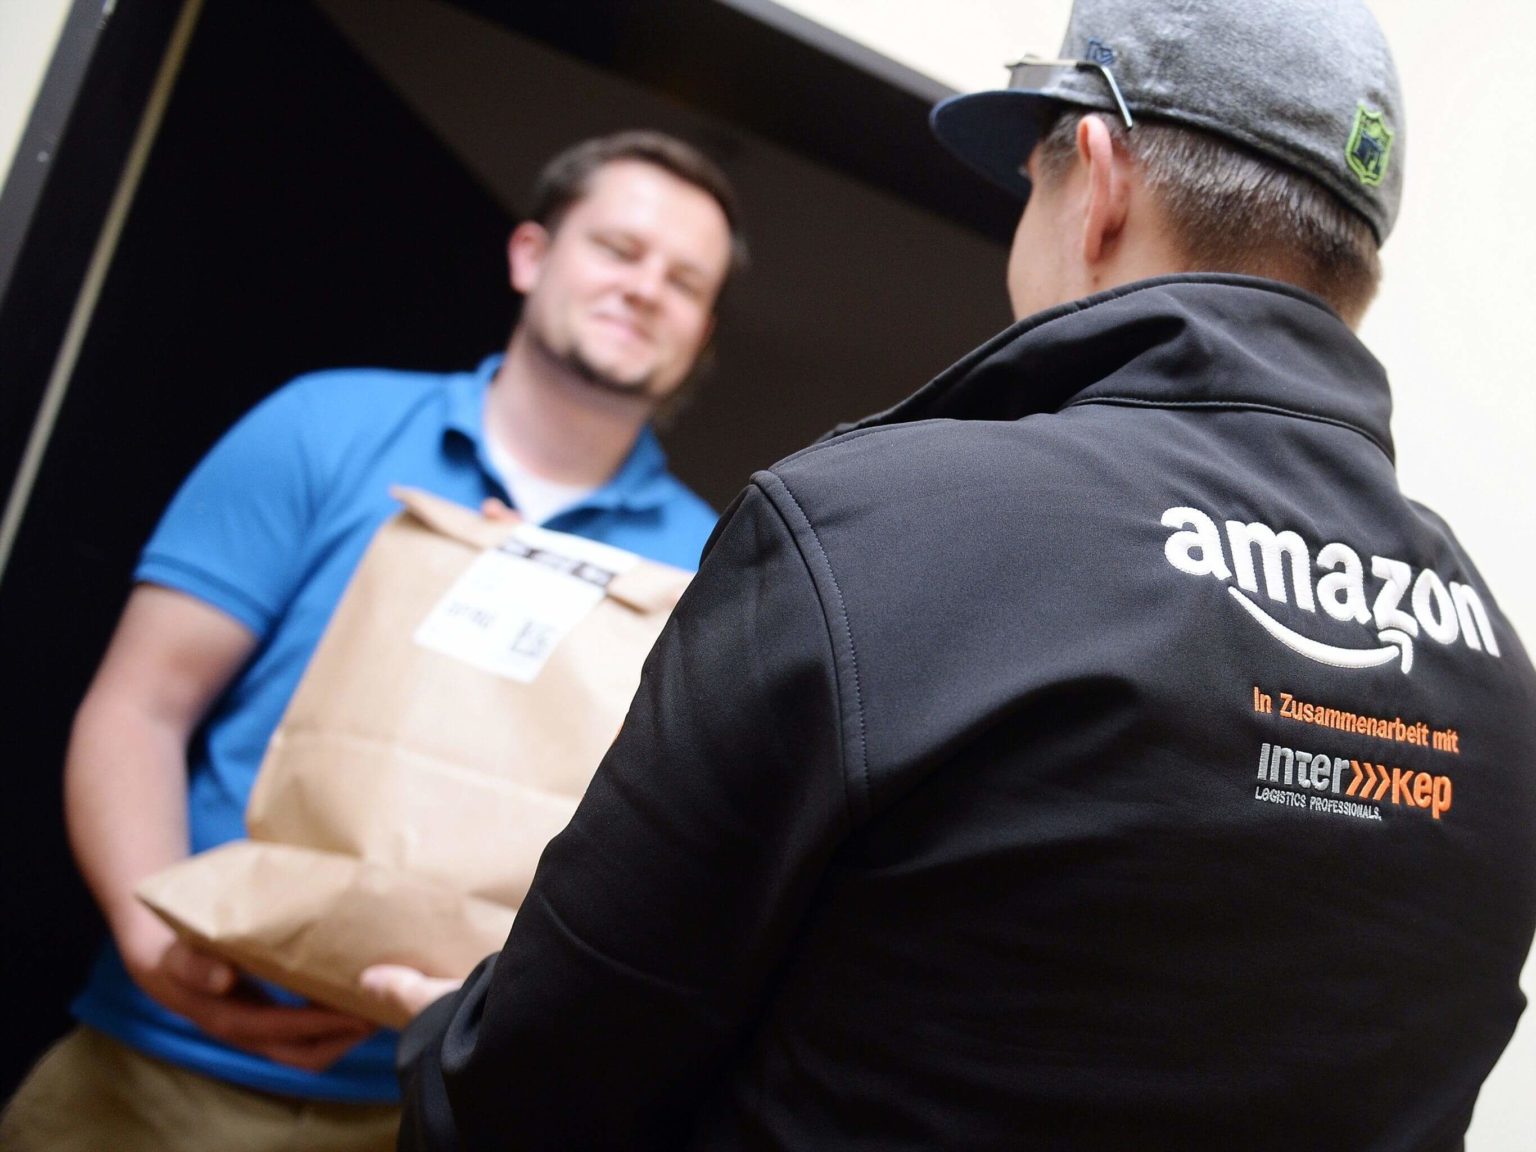 Amazon Employee Death